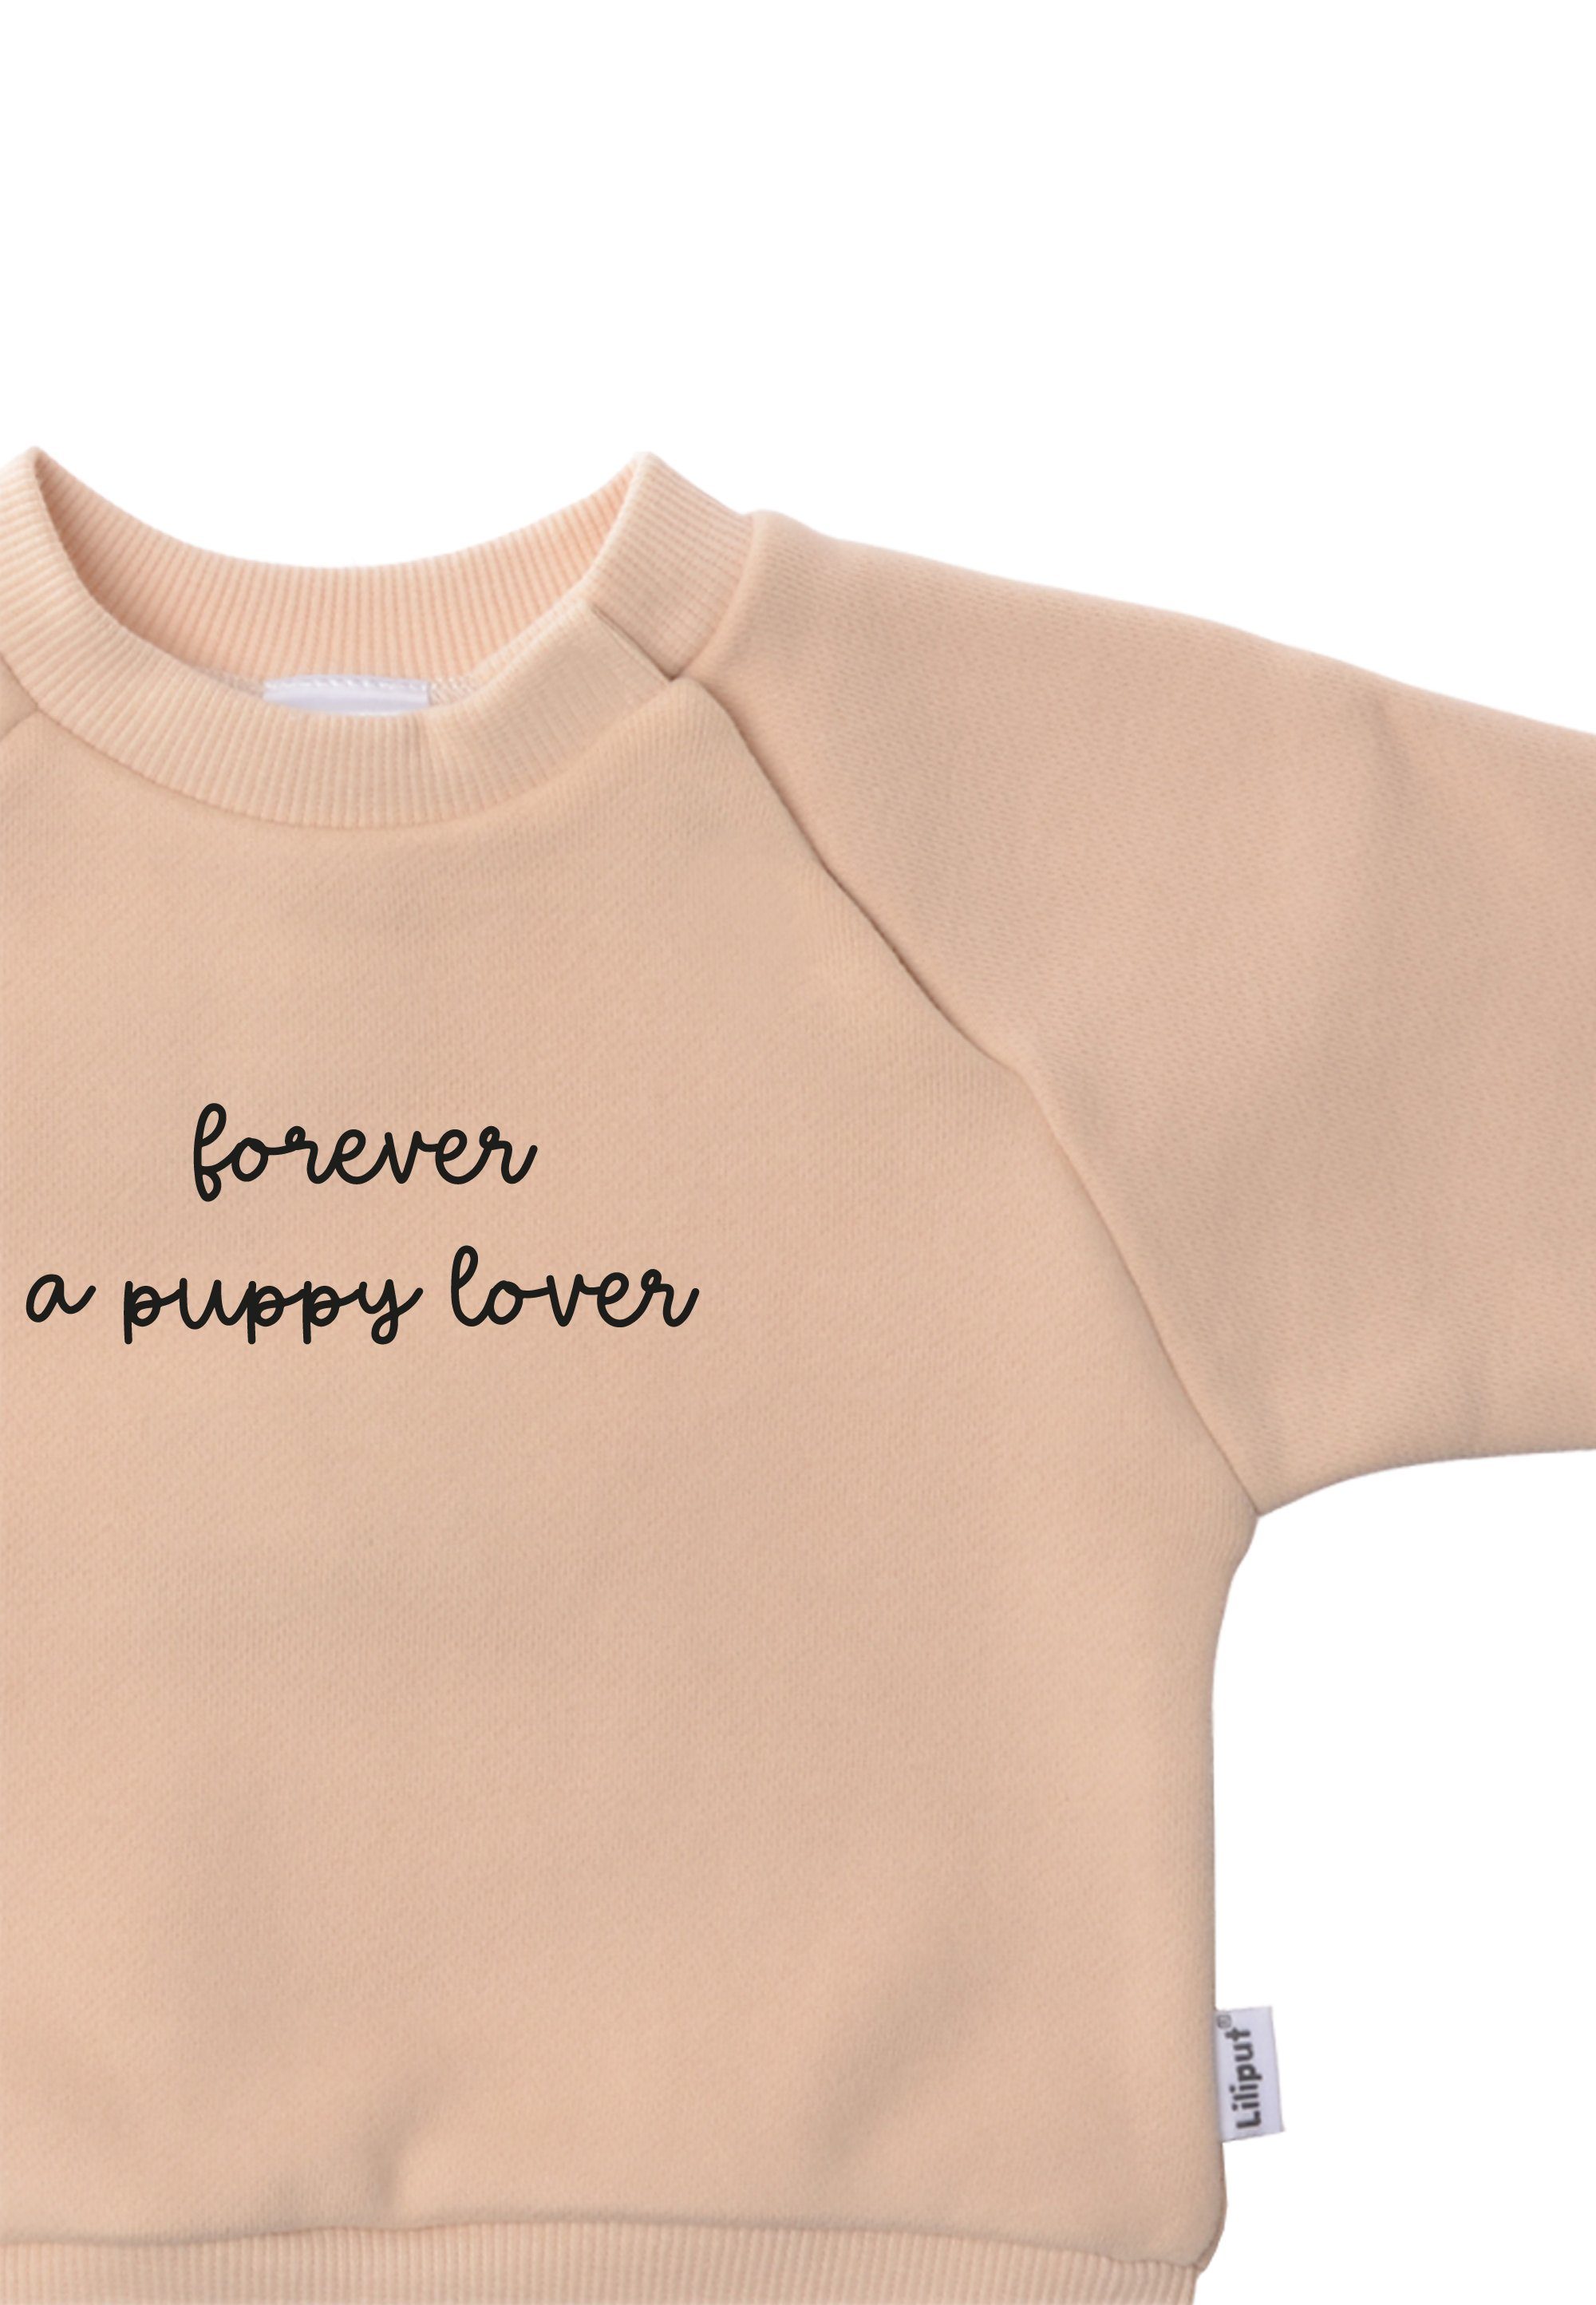 aus puppy a Liliput Sweatshirt Material lover weichem Forever